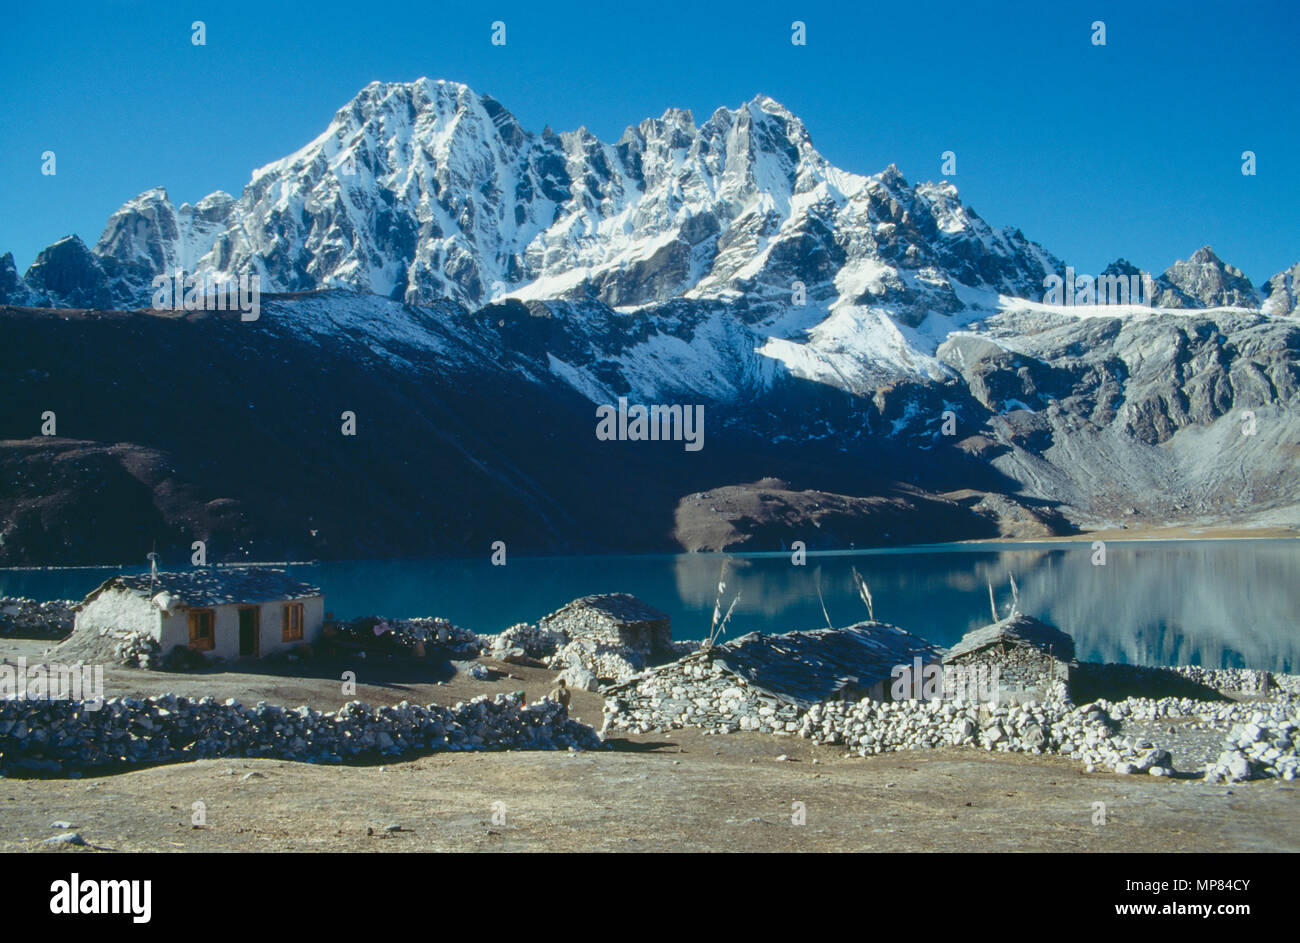 Le Népal, l'Himalaya, les pics couverts de neige, Gokyo surplombant le lac avec ses maisons en pierre et de l'élevage. Banque D'Images